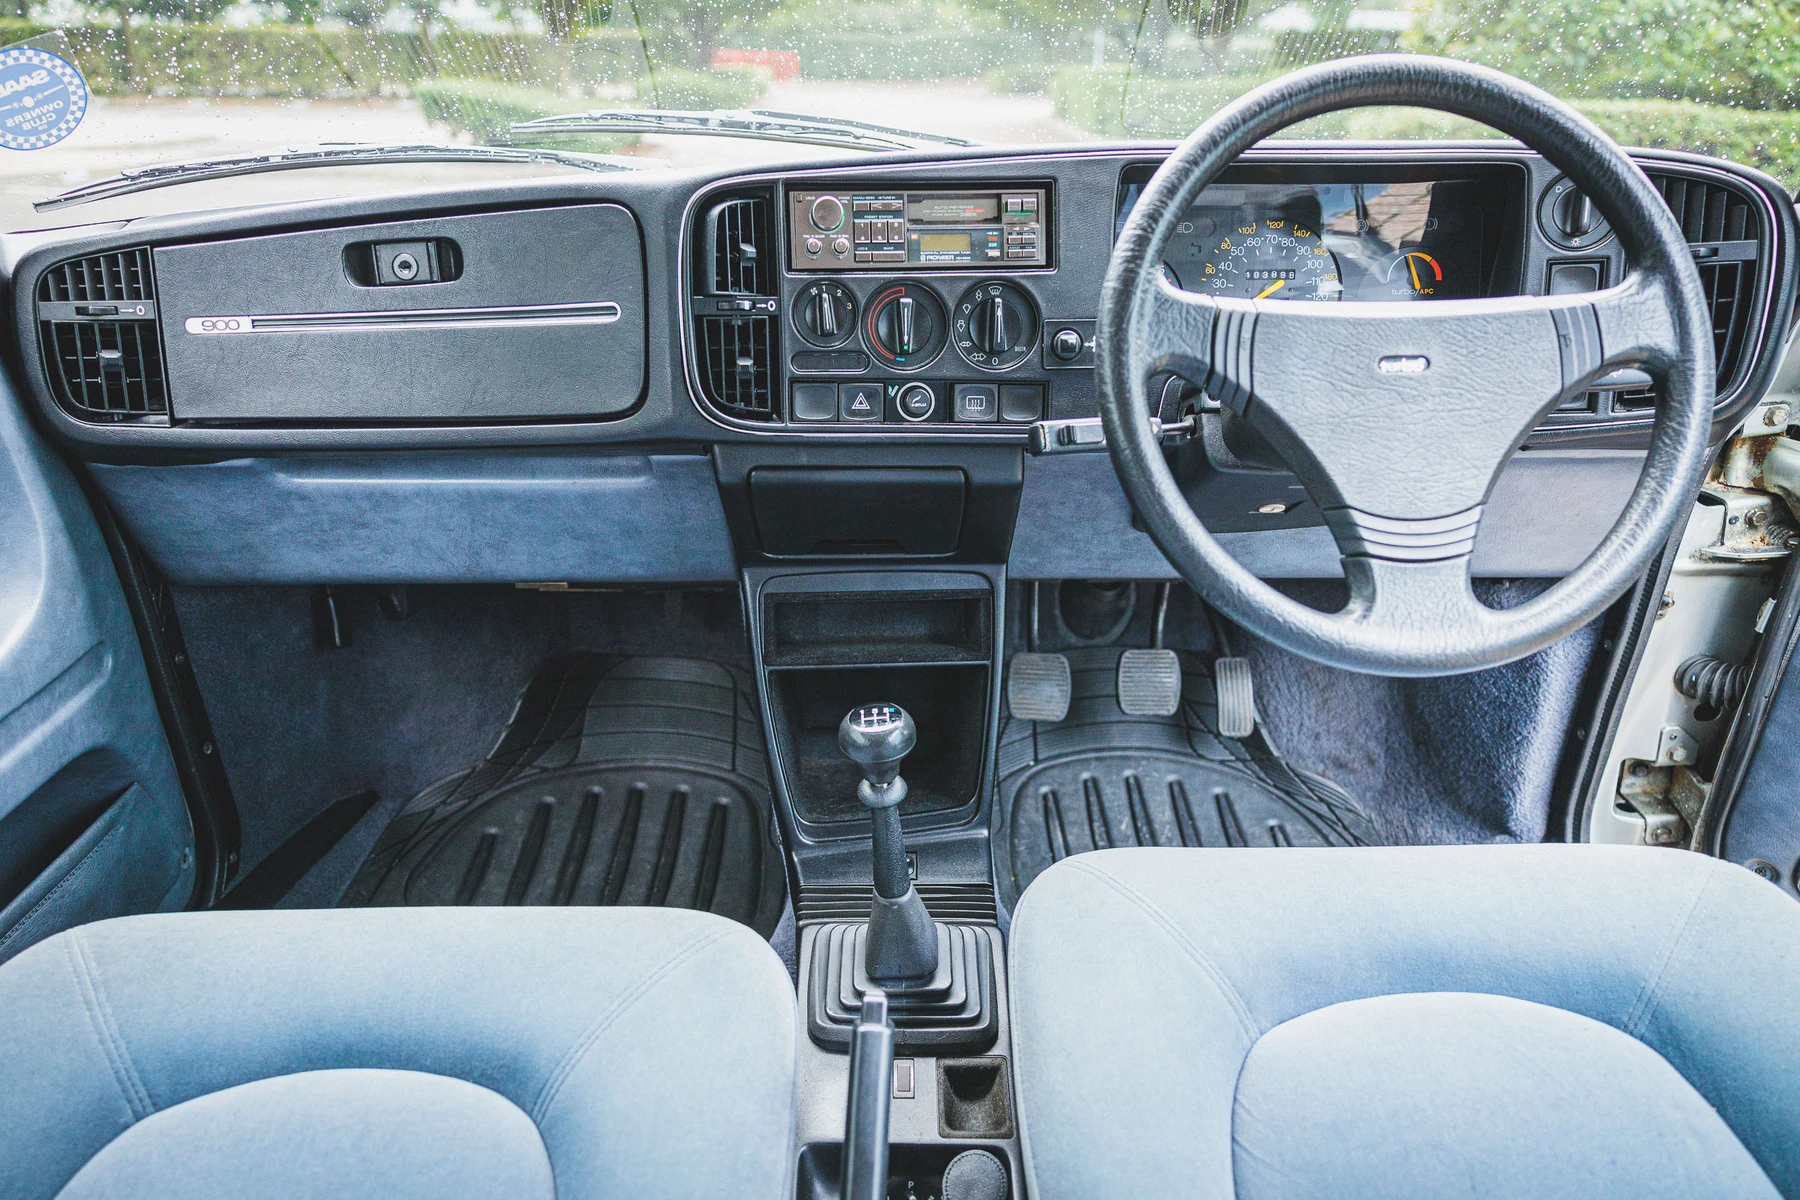 Saab 900 Turbo interior